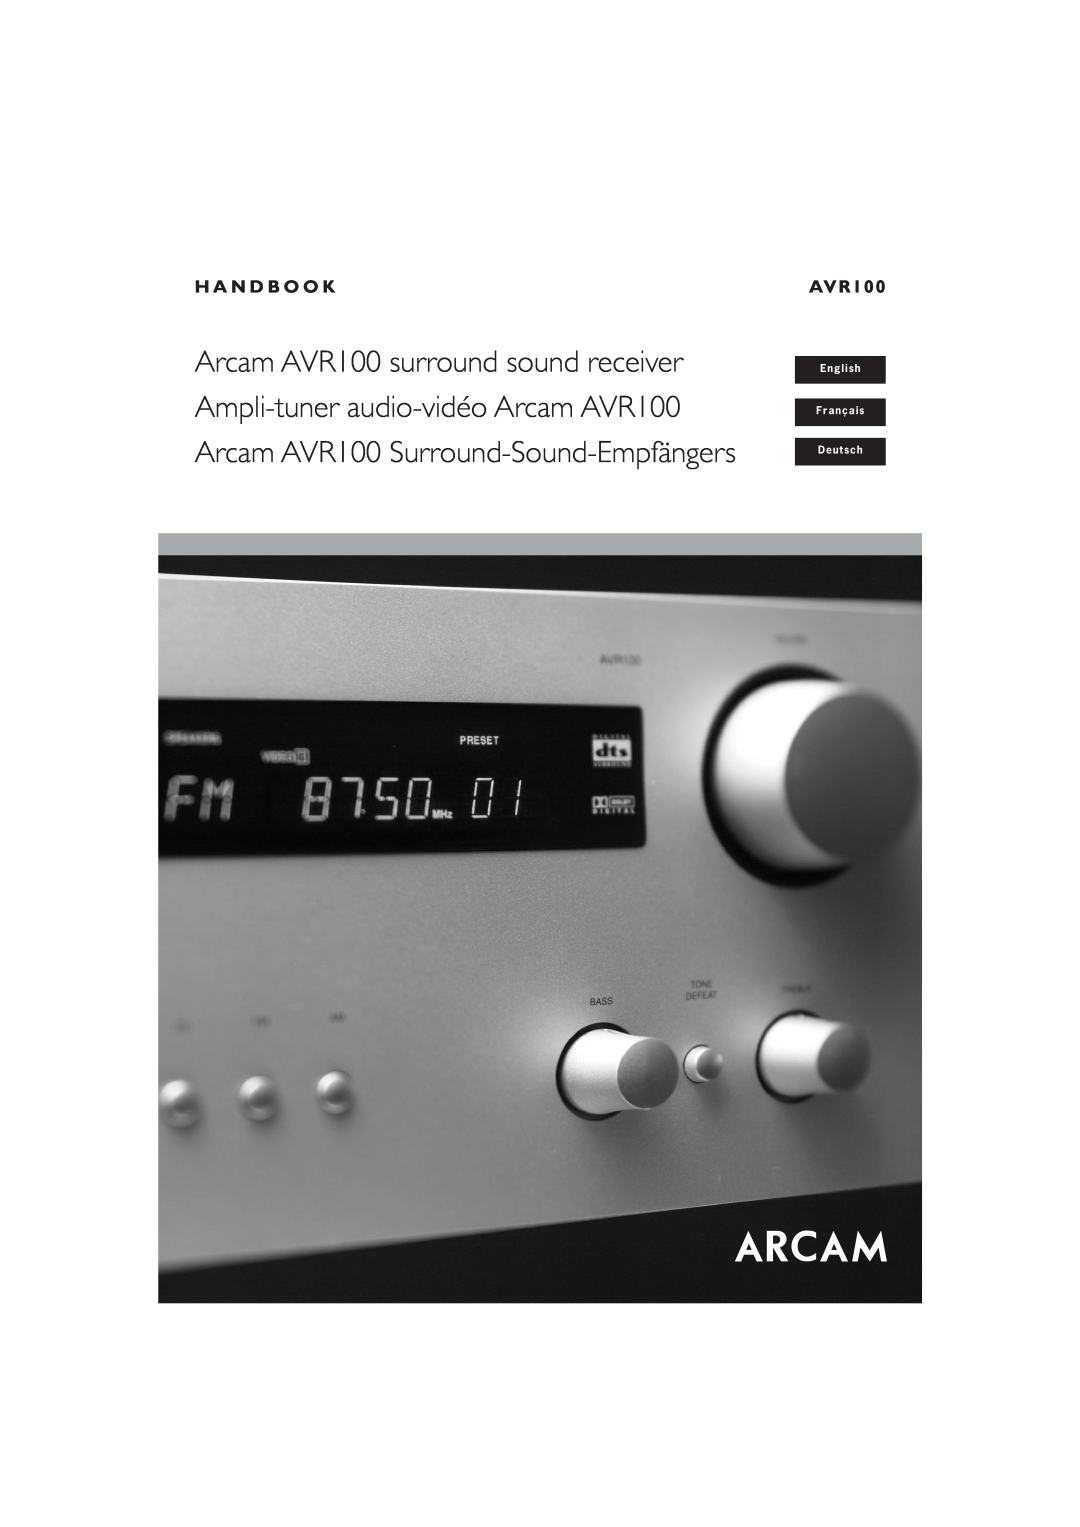 Arcam manual English, Français, Deutsch, Arcam AVR100 surround sound receiver, Ampli-tuner audio-vidéoArcam AVR100 